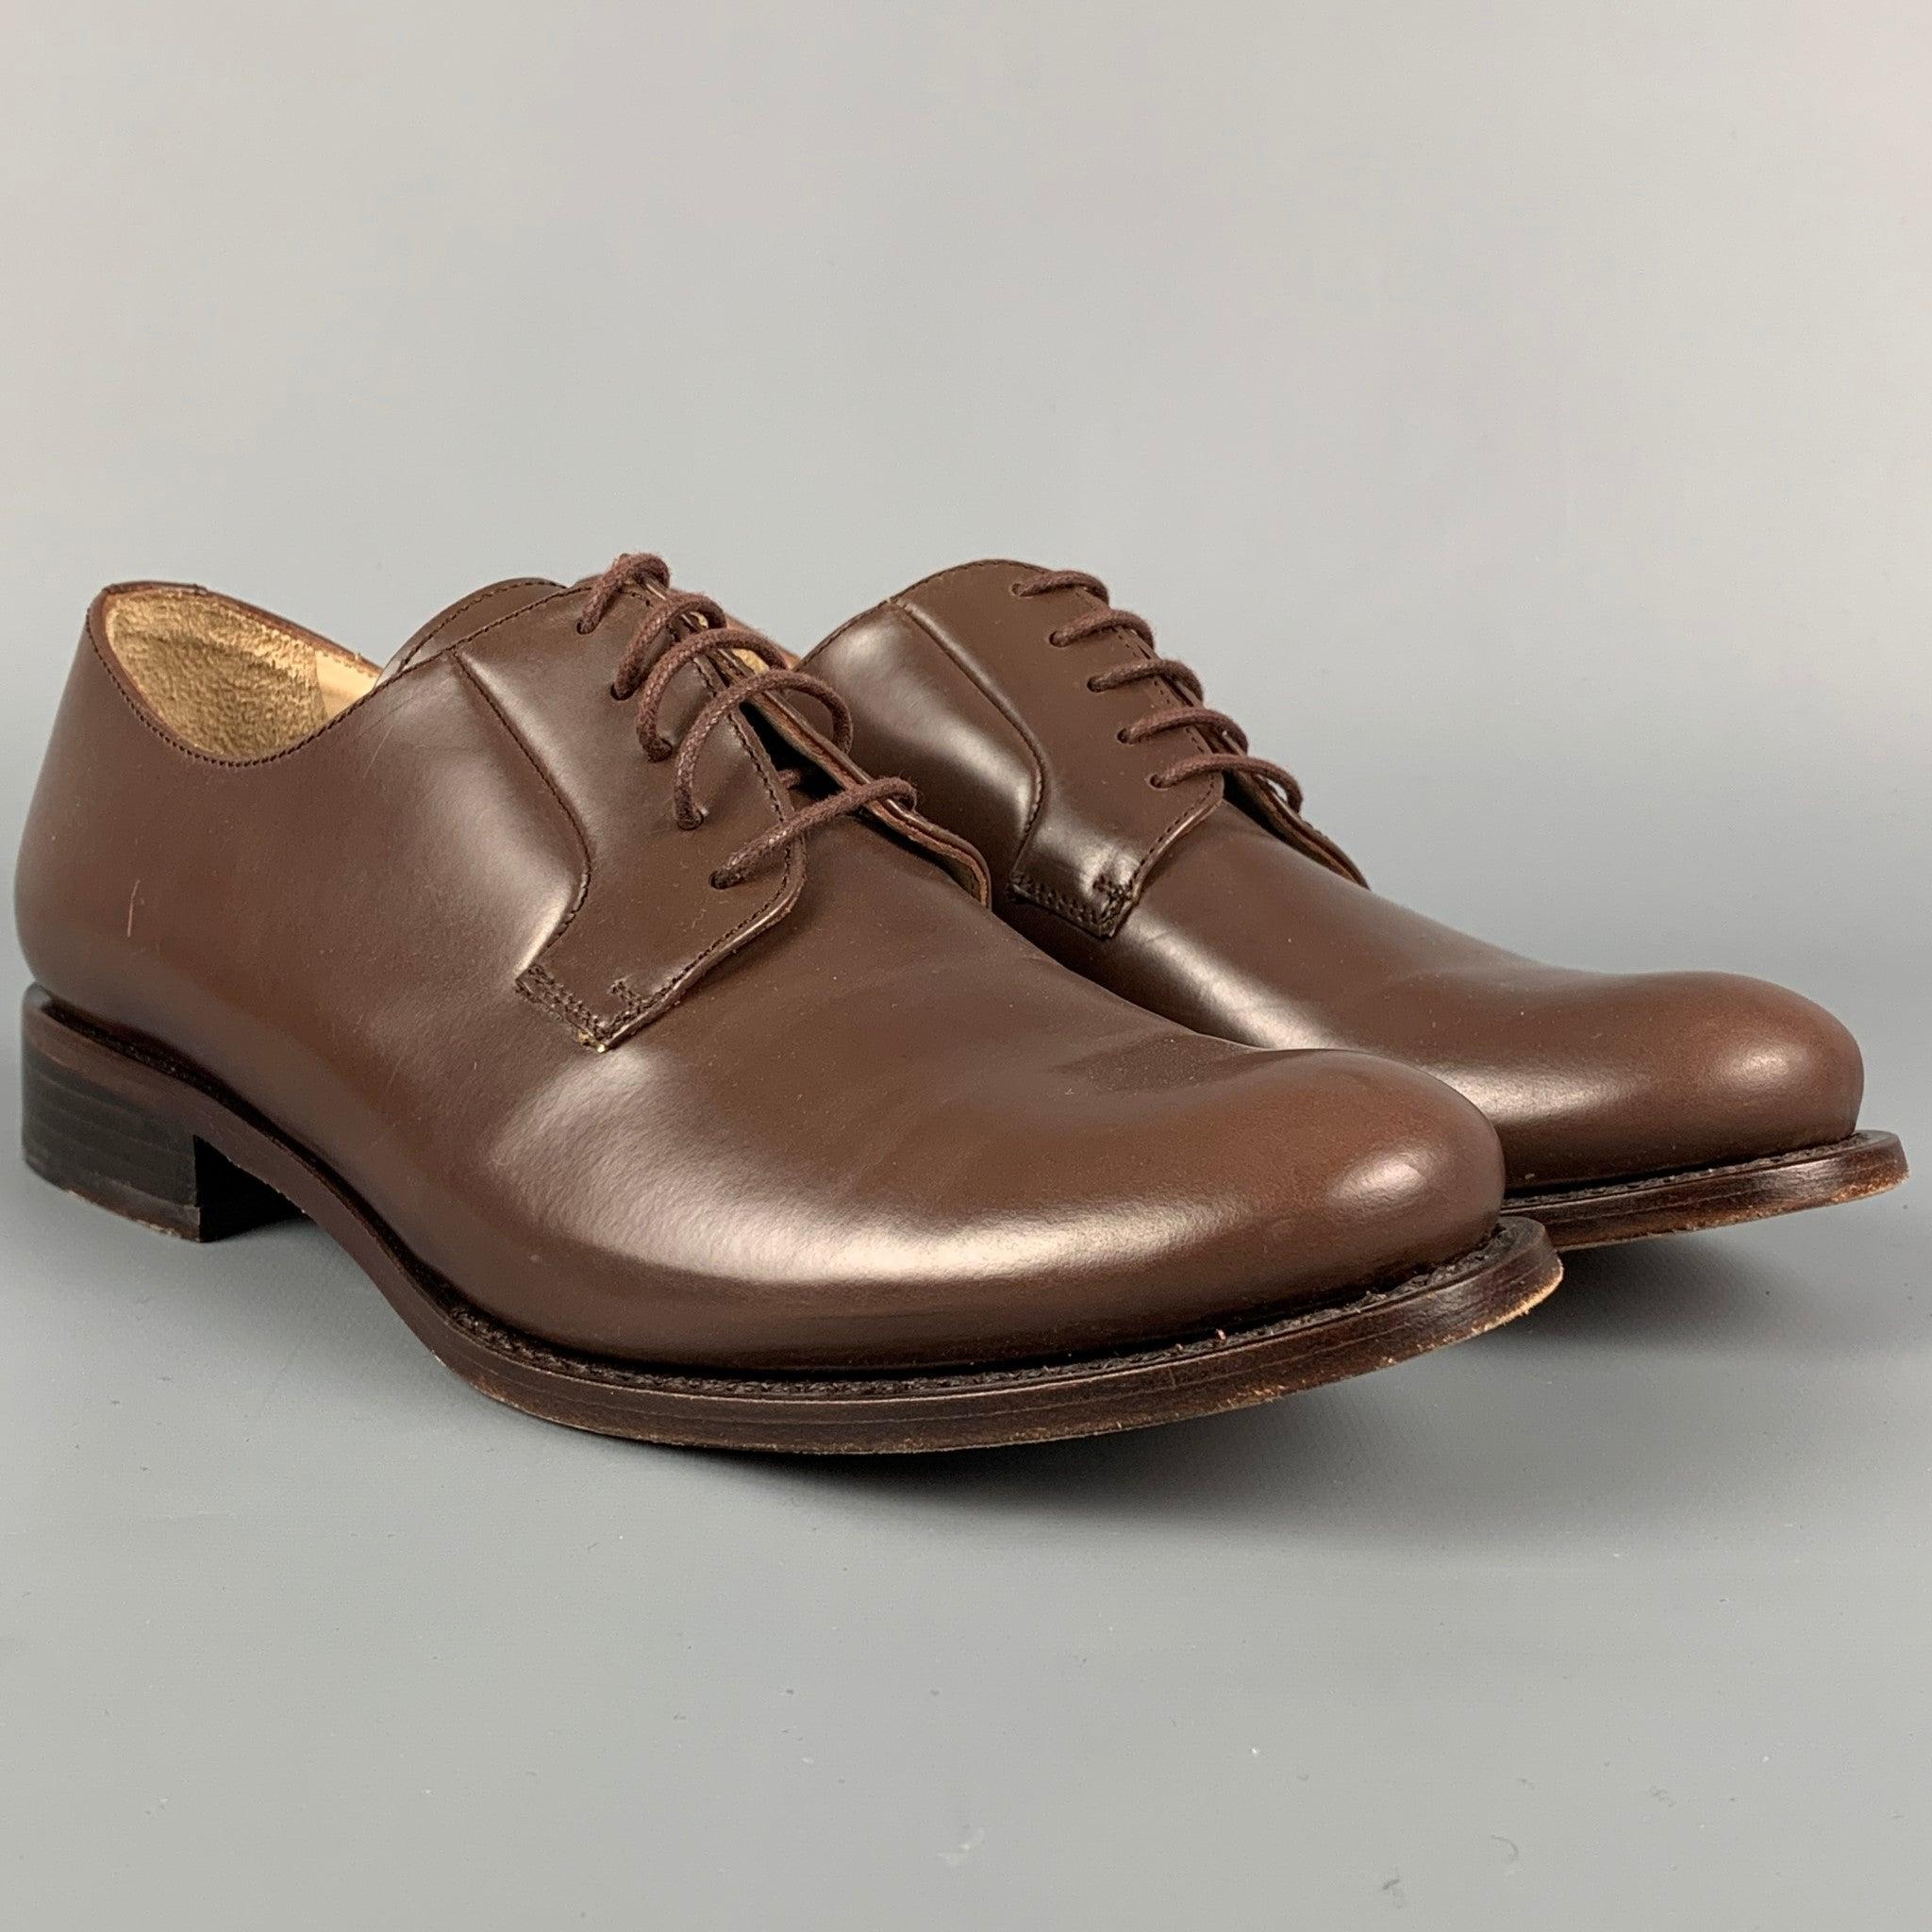 JIL SANDER Schuhe aus braunem Leder, mit klobigem Absatz und Schnürverschluss. Hergestellt in Italien.
Sehr gut
Gebrauchtes Zustand. 

Markiert:   36.5Außensohle: 10 Zoll  x 3.5 Zoll 
  
  
 
Referenz: 113028
Kategorie: Schnürsenkel
Mehr Details
   